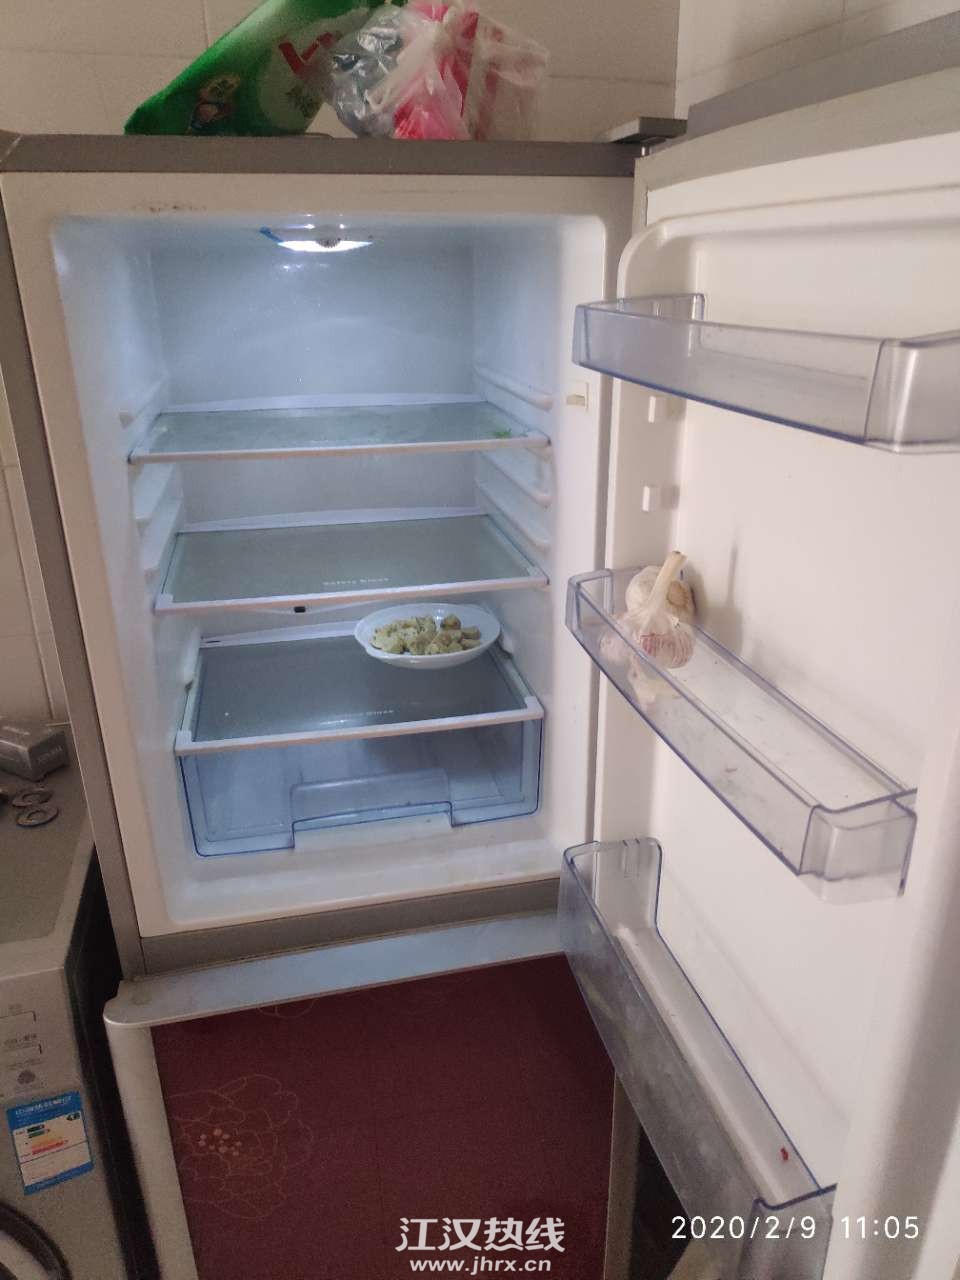 冰箱空了,还可以下面条吃